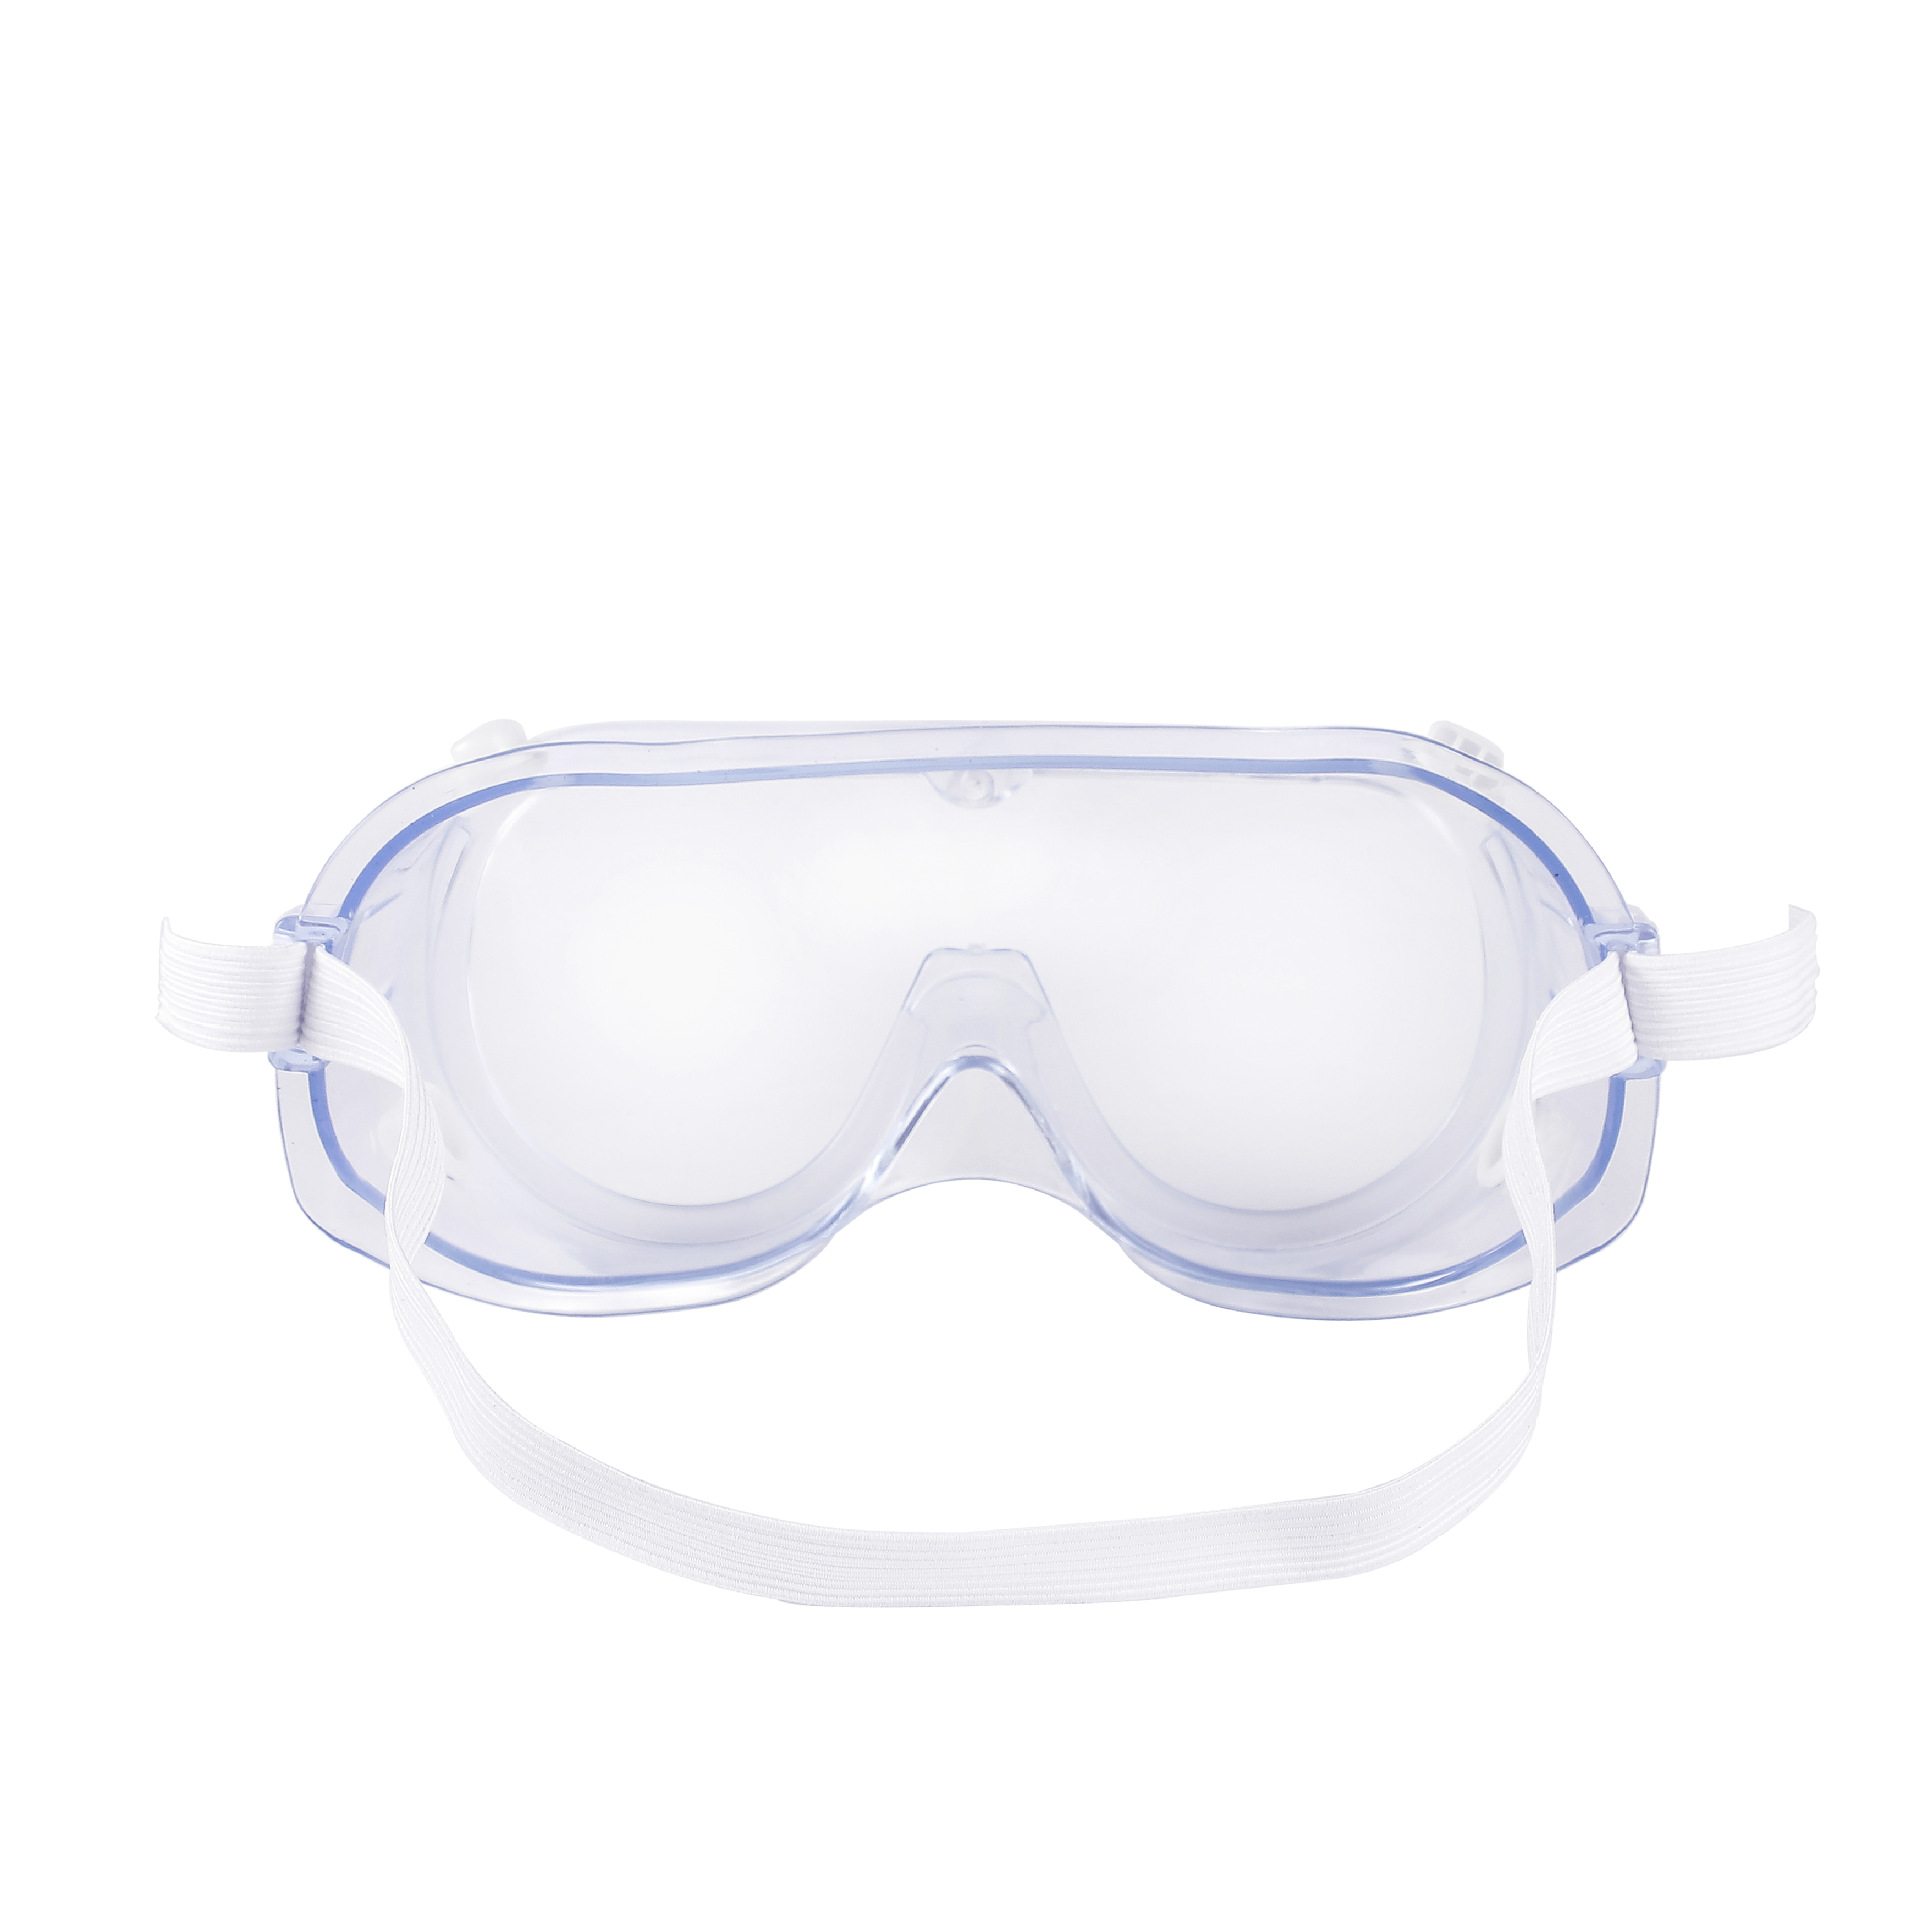 متعددة الوظائف المضادة للرمل نظارات واقية نظارات السلامة نظارات مختبر العمل نظارات السلامة نظارات مكافحة رش العين حماية العين